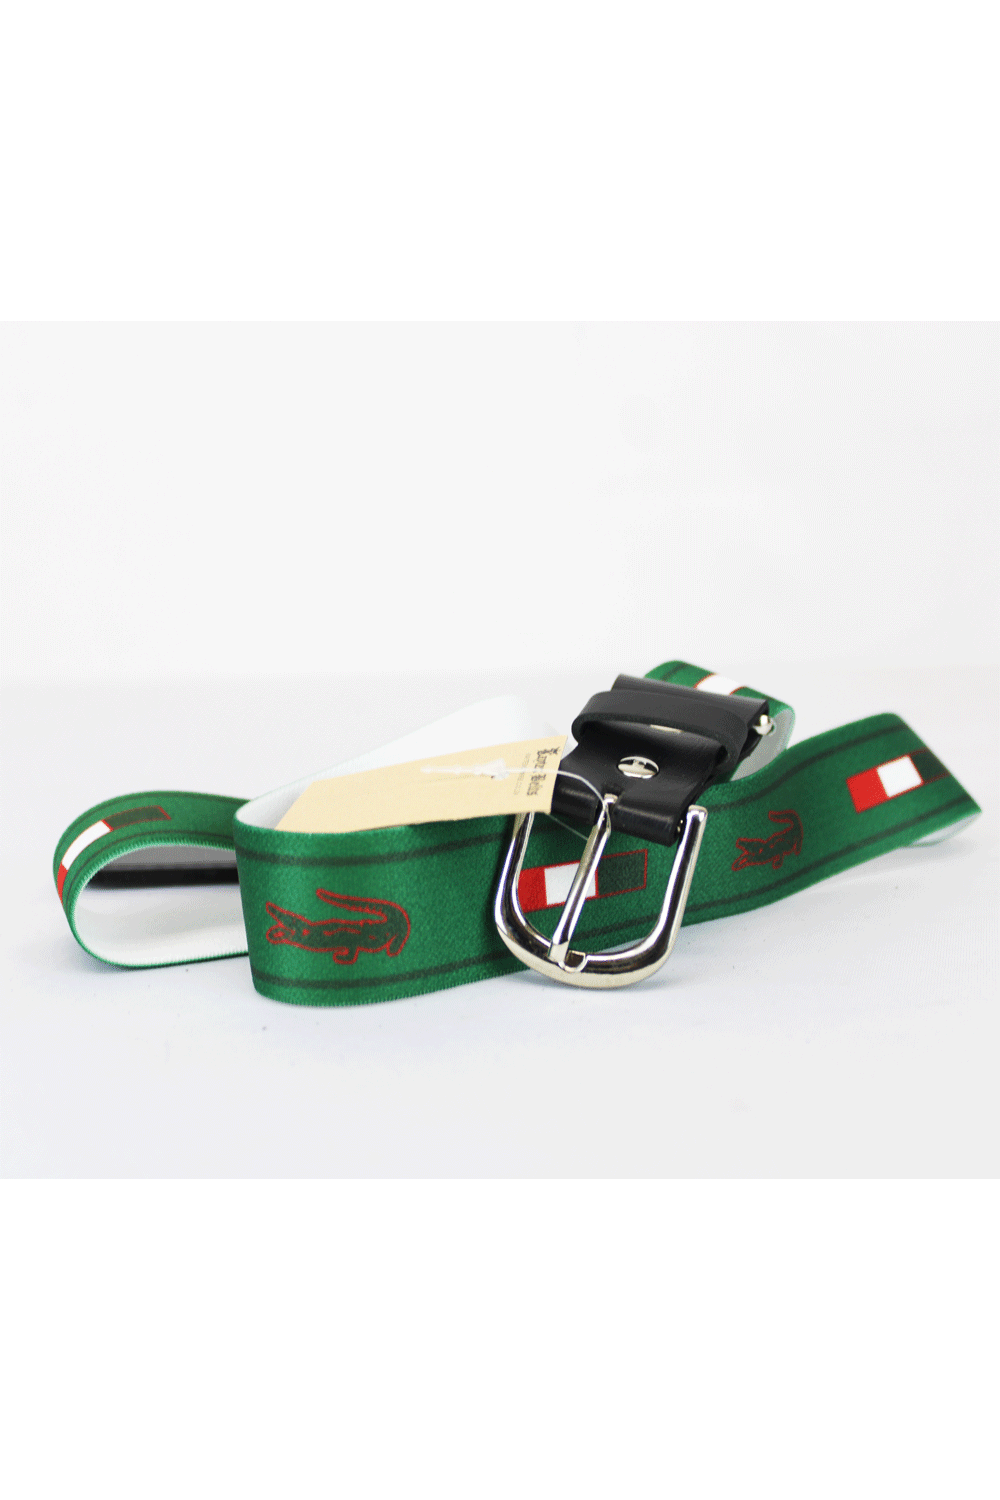 Bossini Lacoste Print Adjustable Belt